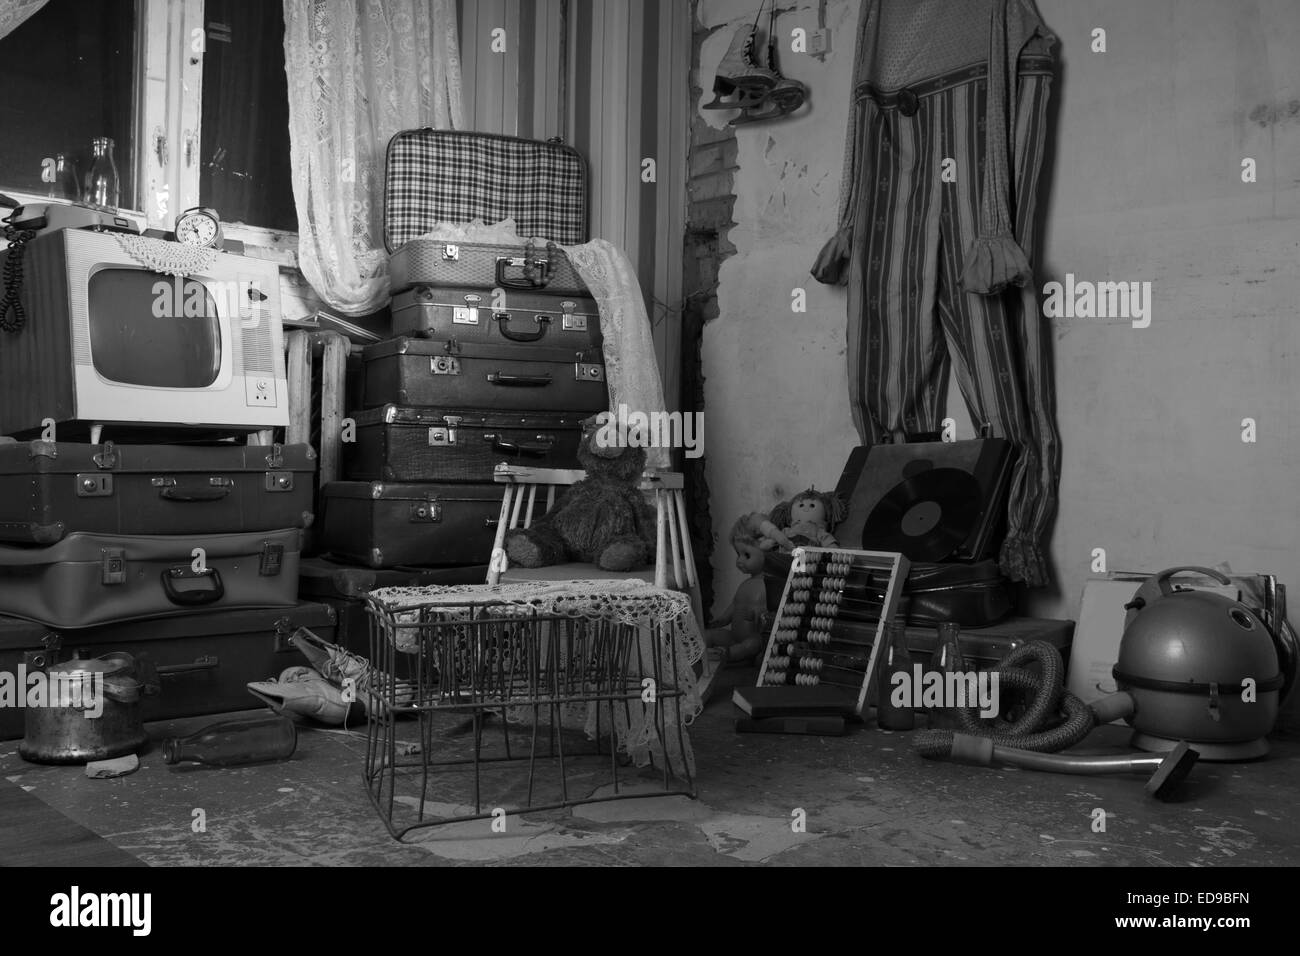 Chaotisch sortierten ausrangierten alten Elemente in einem Raum. In Monochrom erfasst. Stockfoto